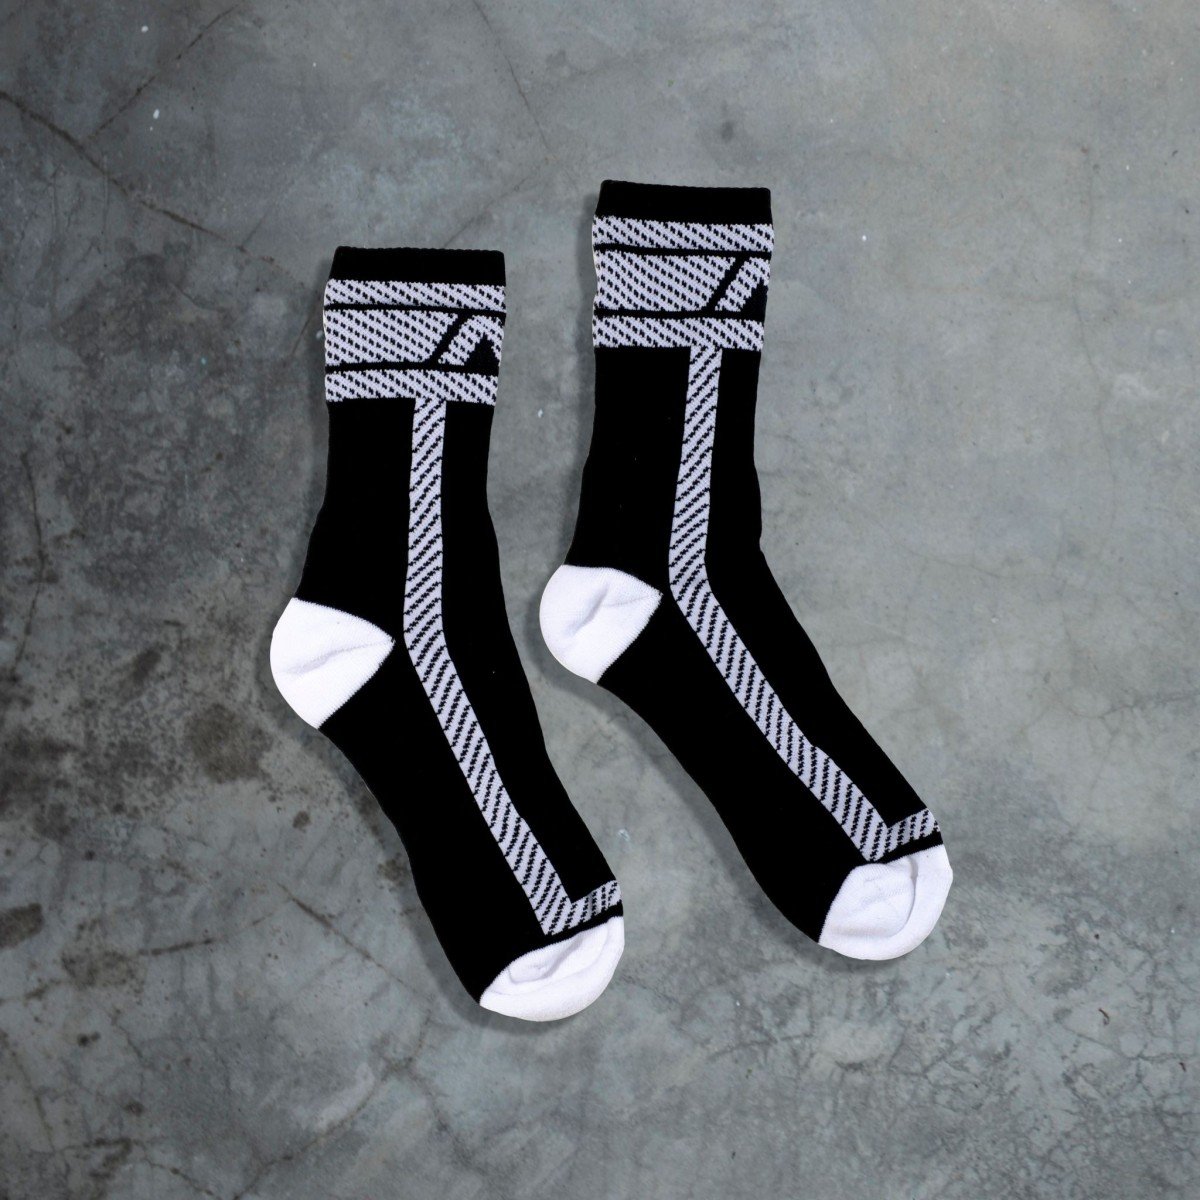 Ponožky AD Fetish ADF28 Fetish Sock černo-bílé L/XL, bavlněné ponožky